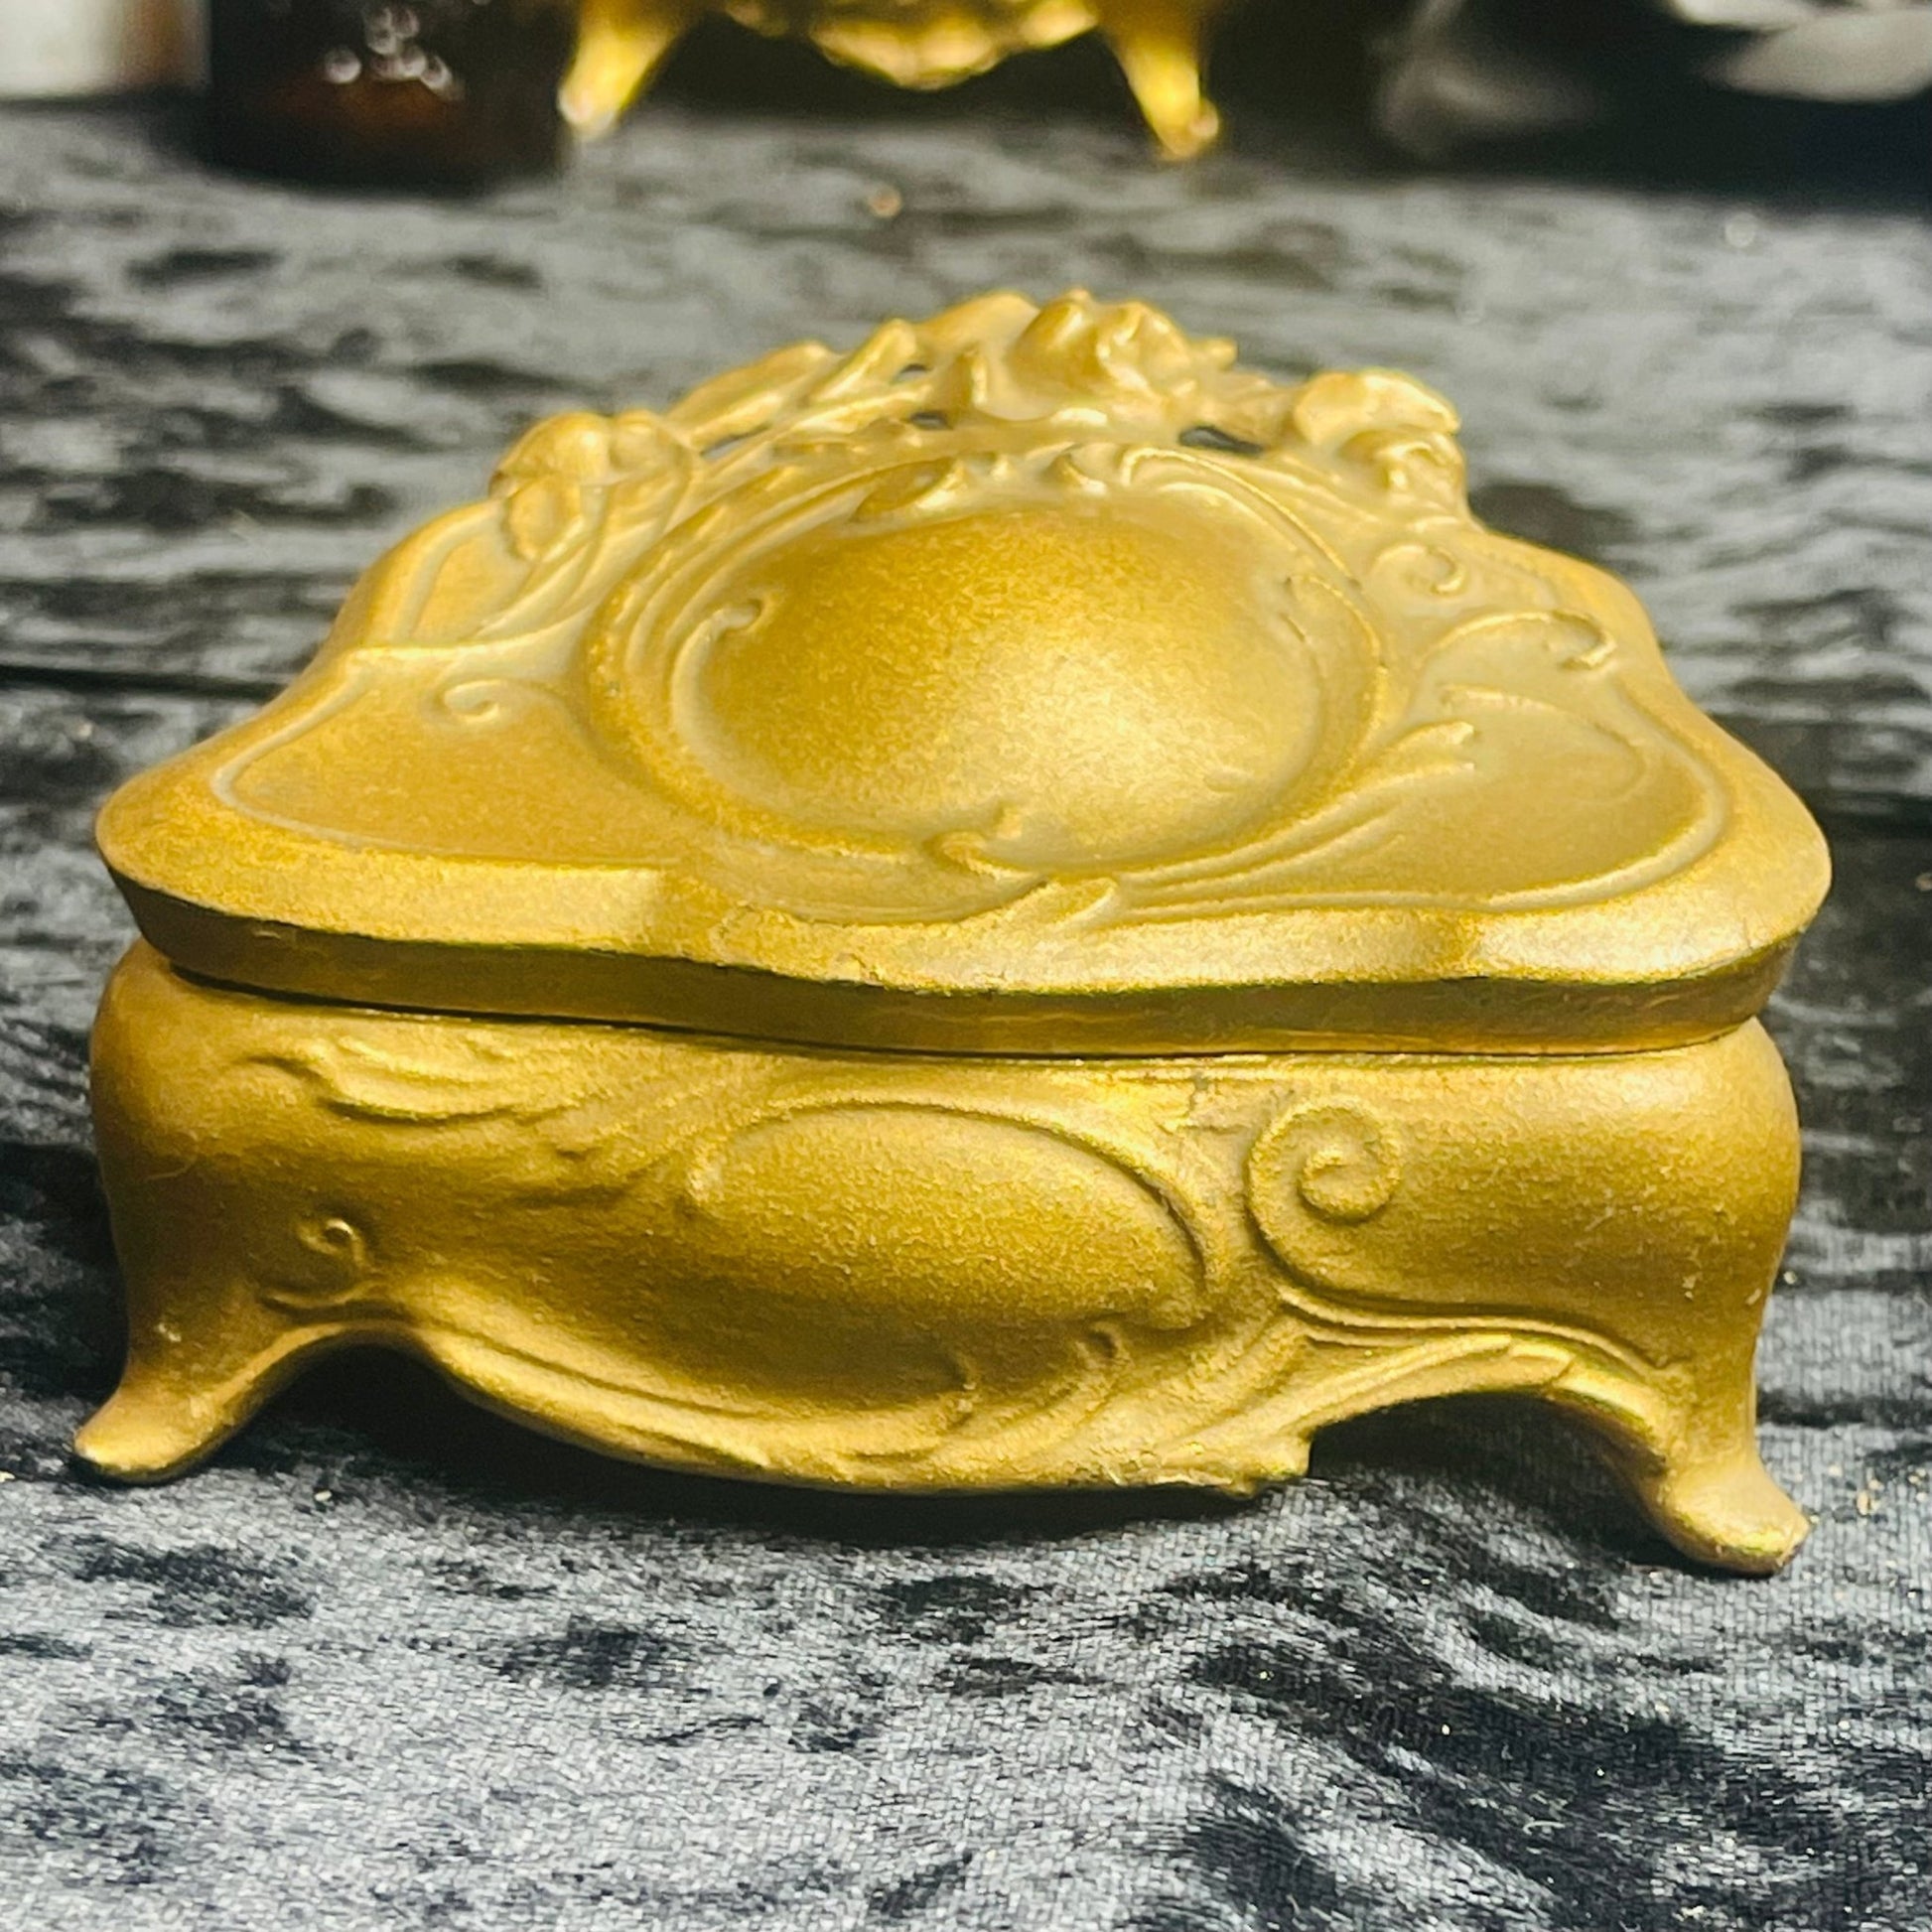 Antique Art Nouveau Gold Casket Box Lined - Loved To Death